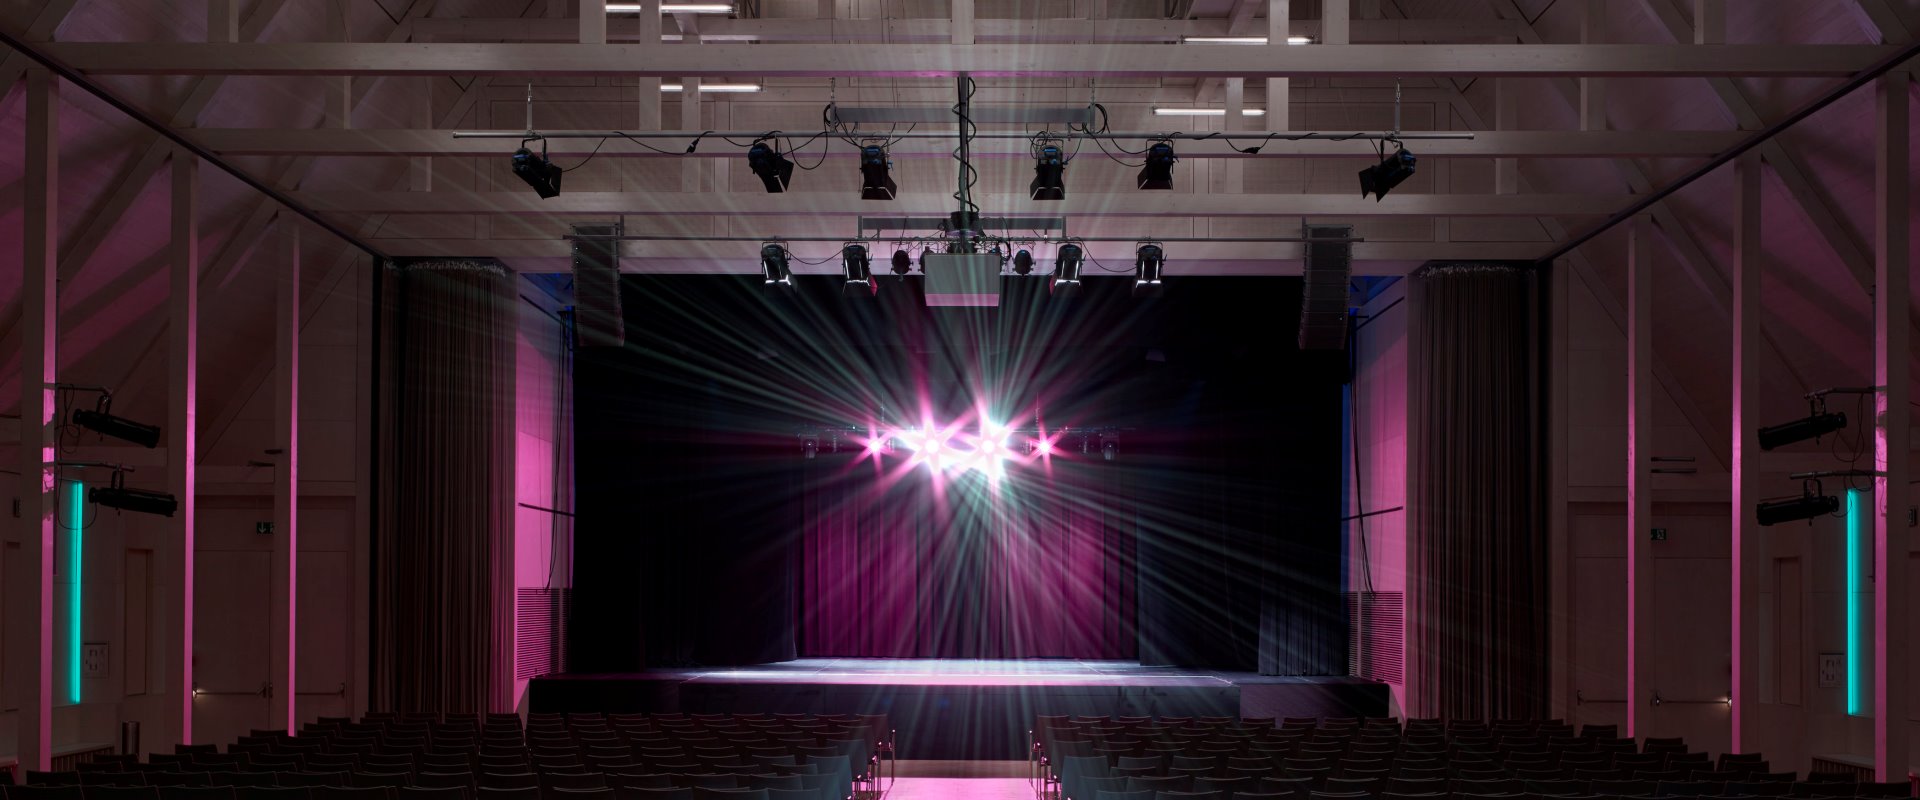 Der Raiffeisen-Saal mit Reihenbestuhlung und rosa Beleuchtung auf der Bühne im Forum Altötting.